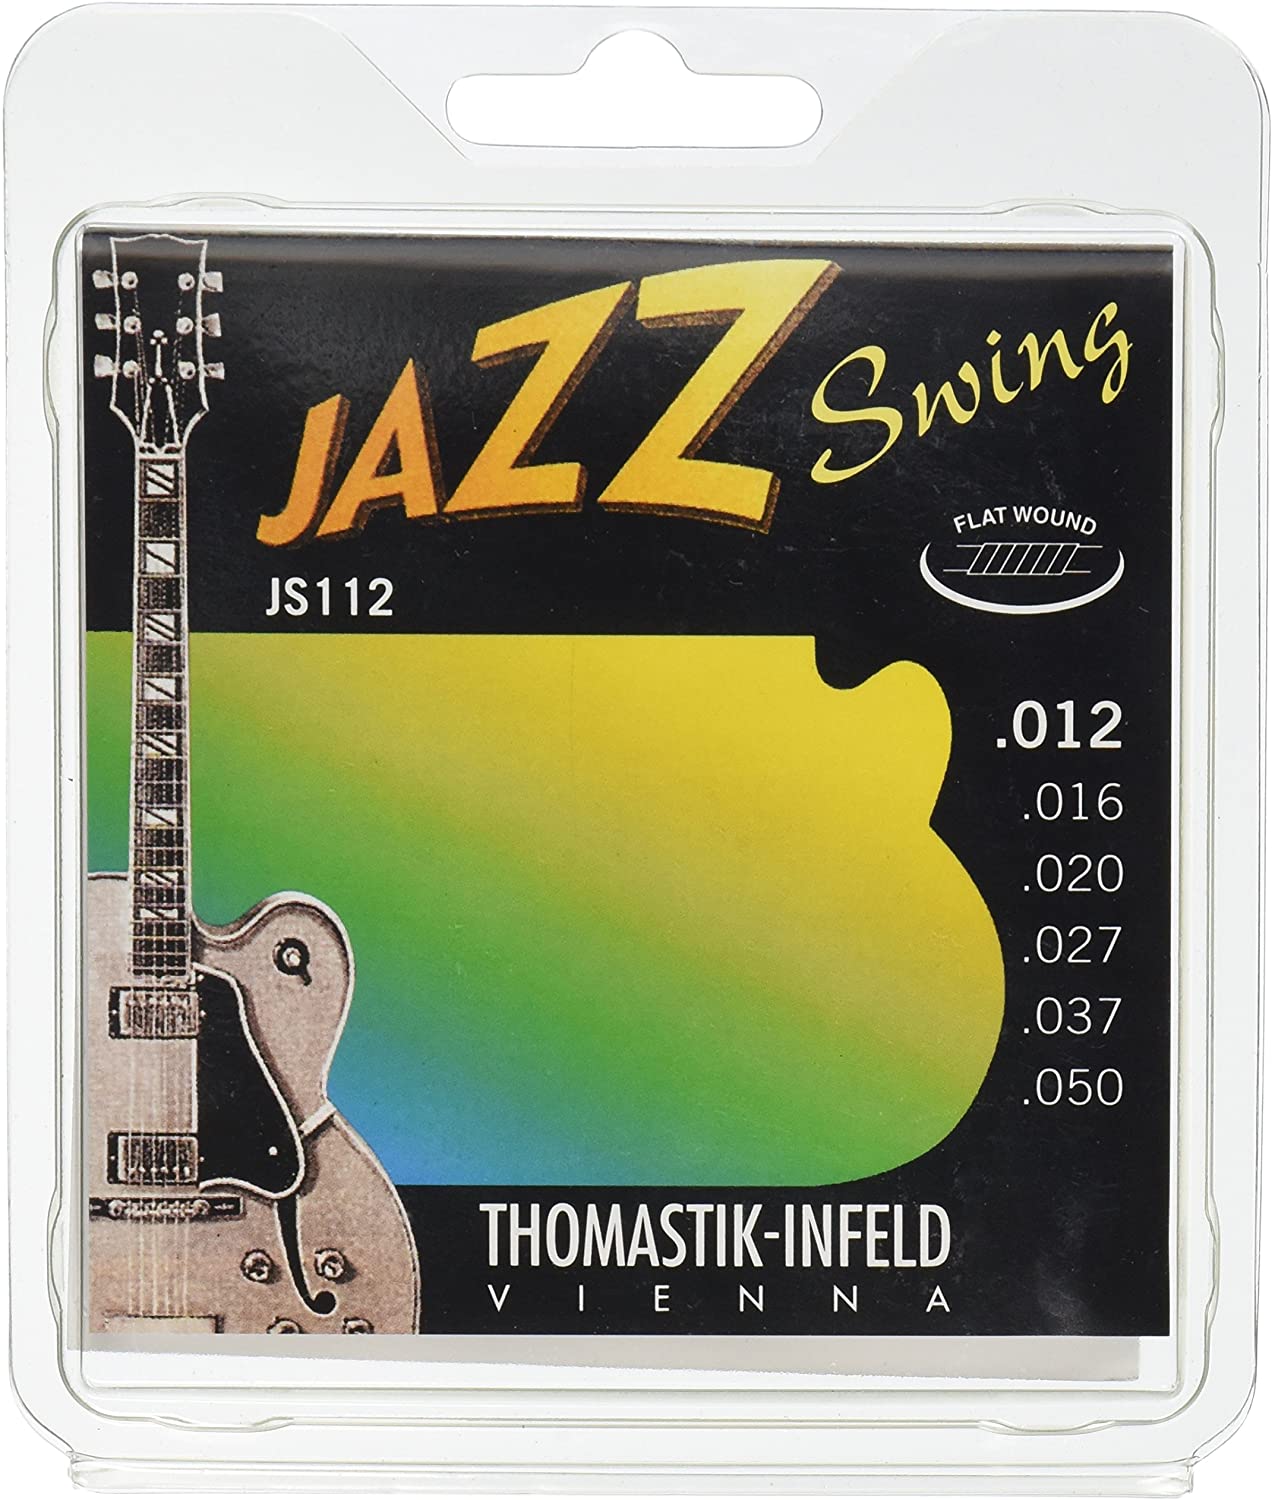 Thomastik-Infeld Guitar Strings